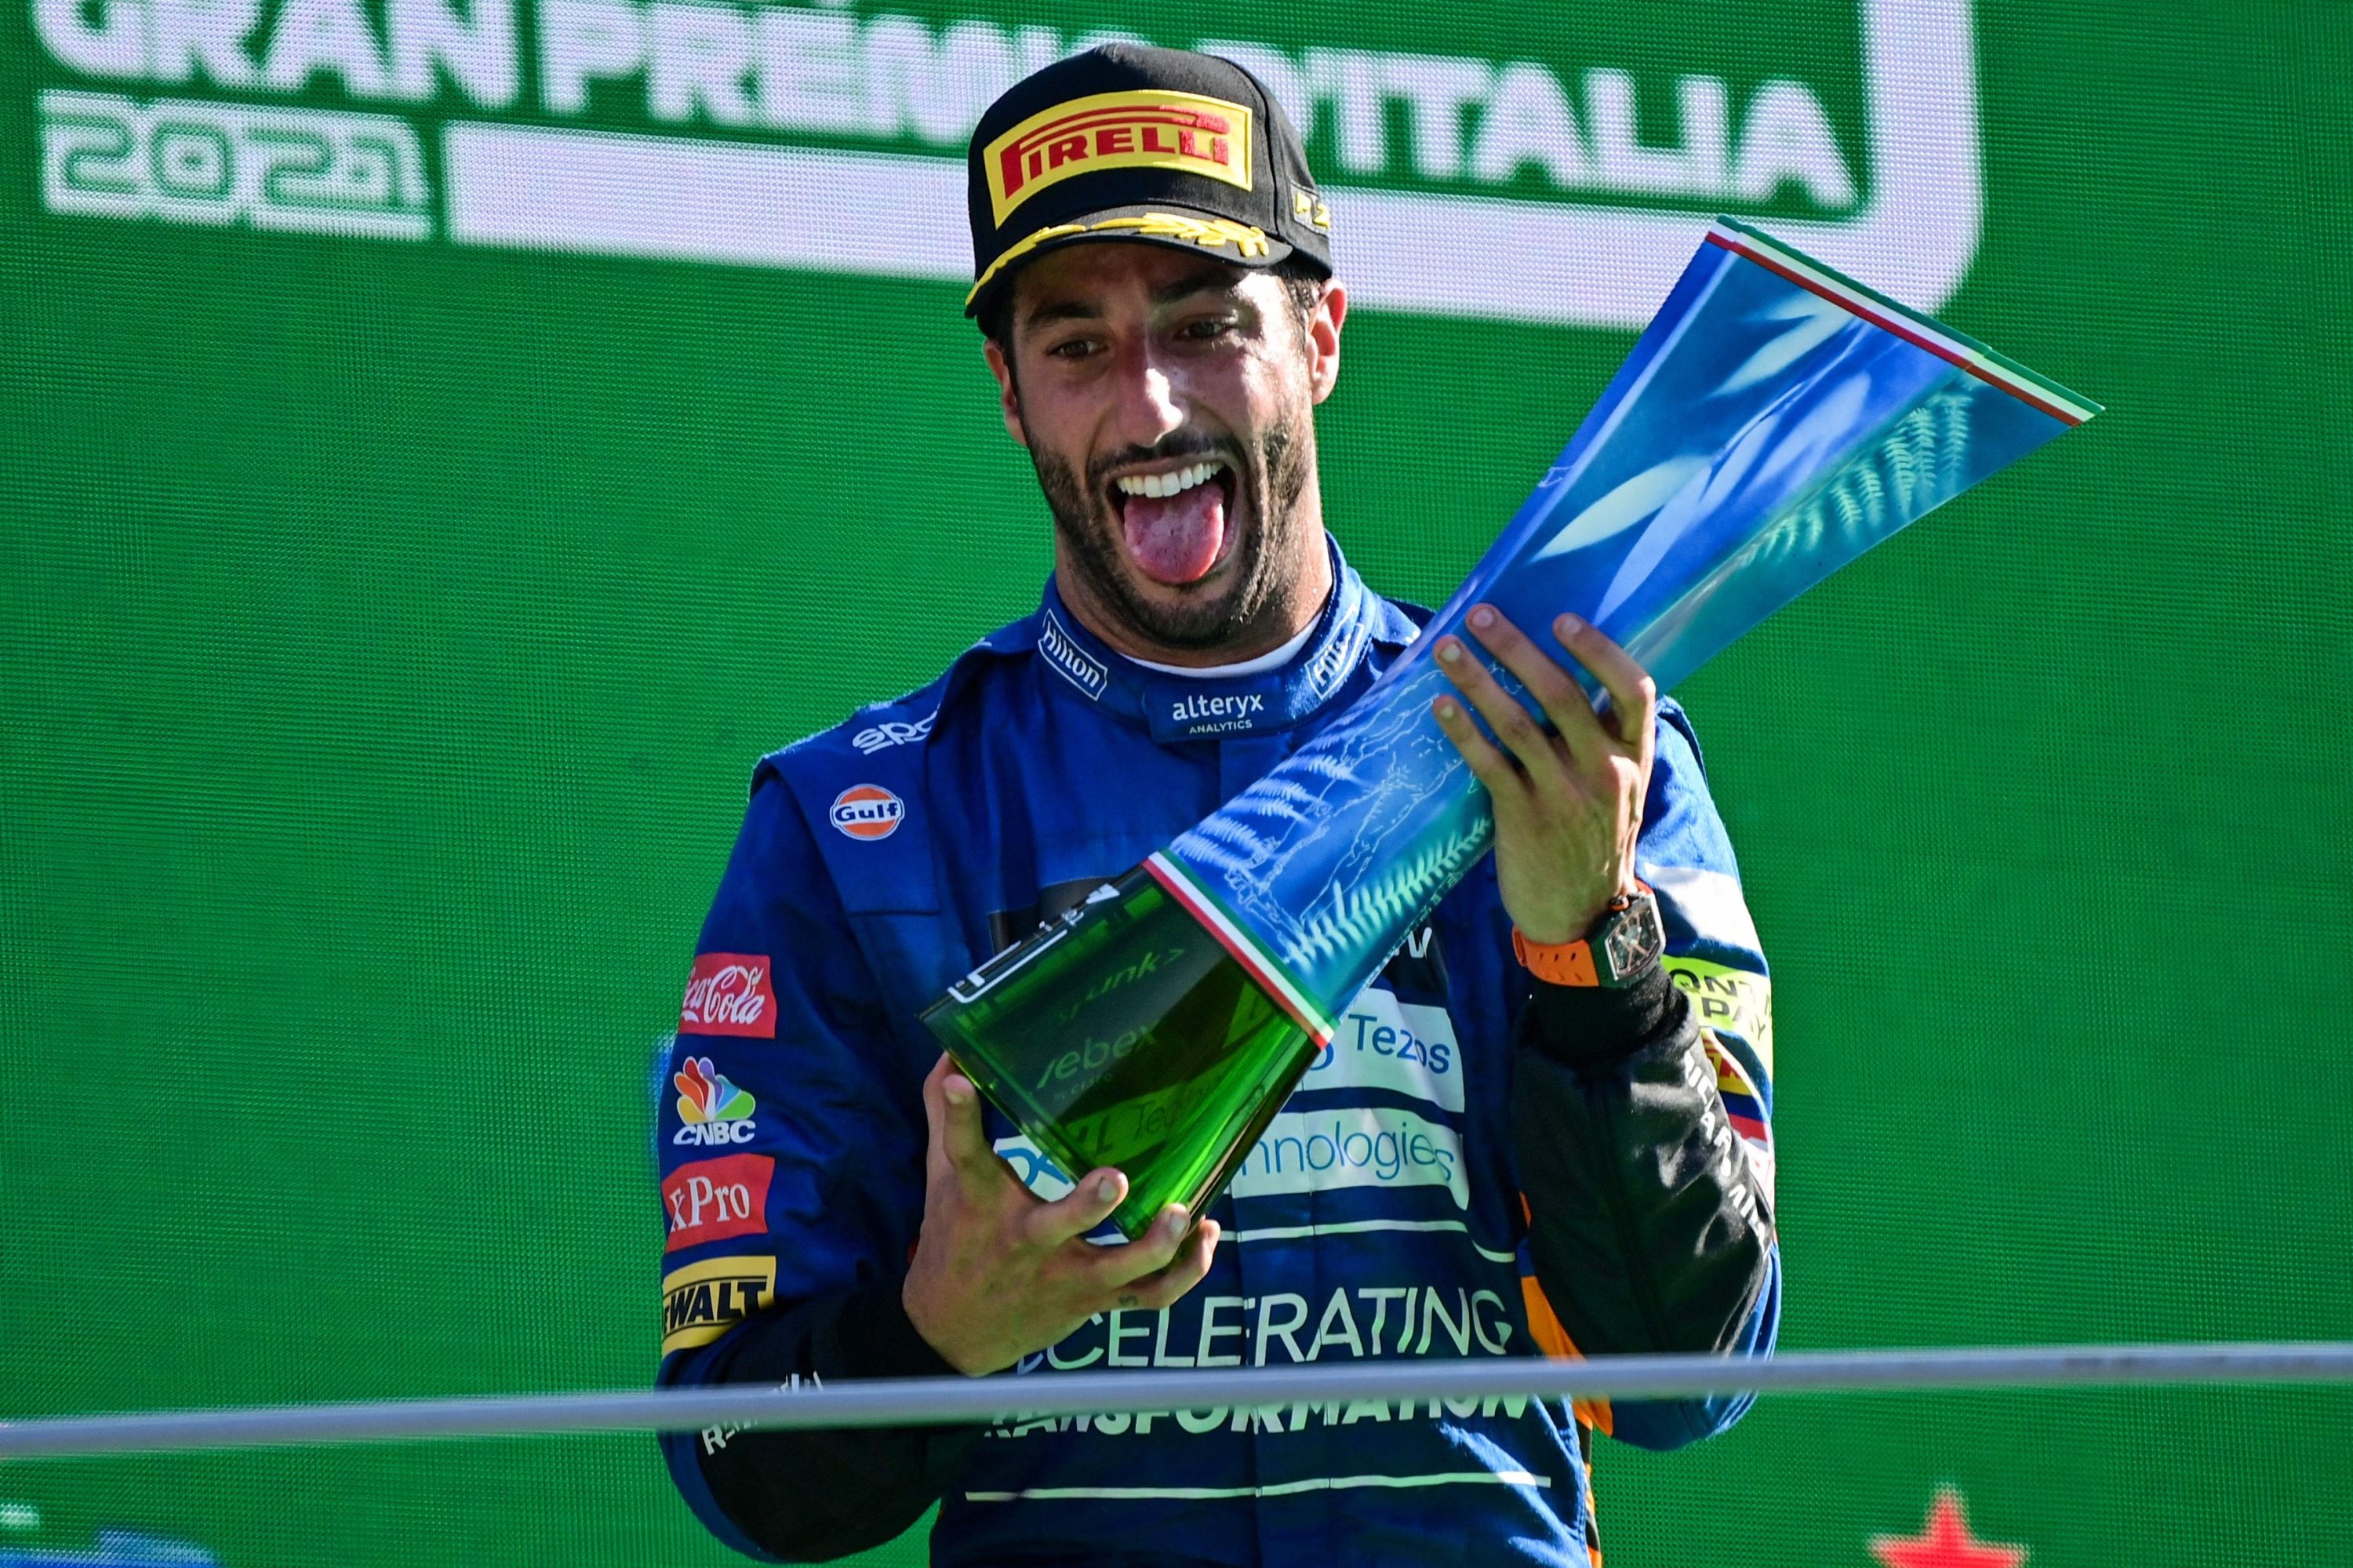 Ricciardo wins at Monza as Verstappen and Hamilton crash